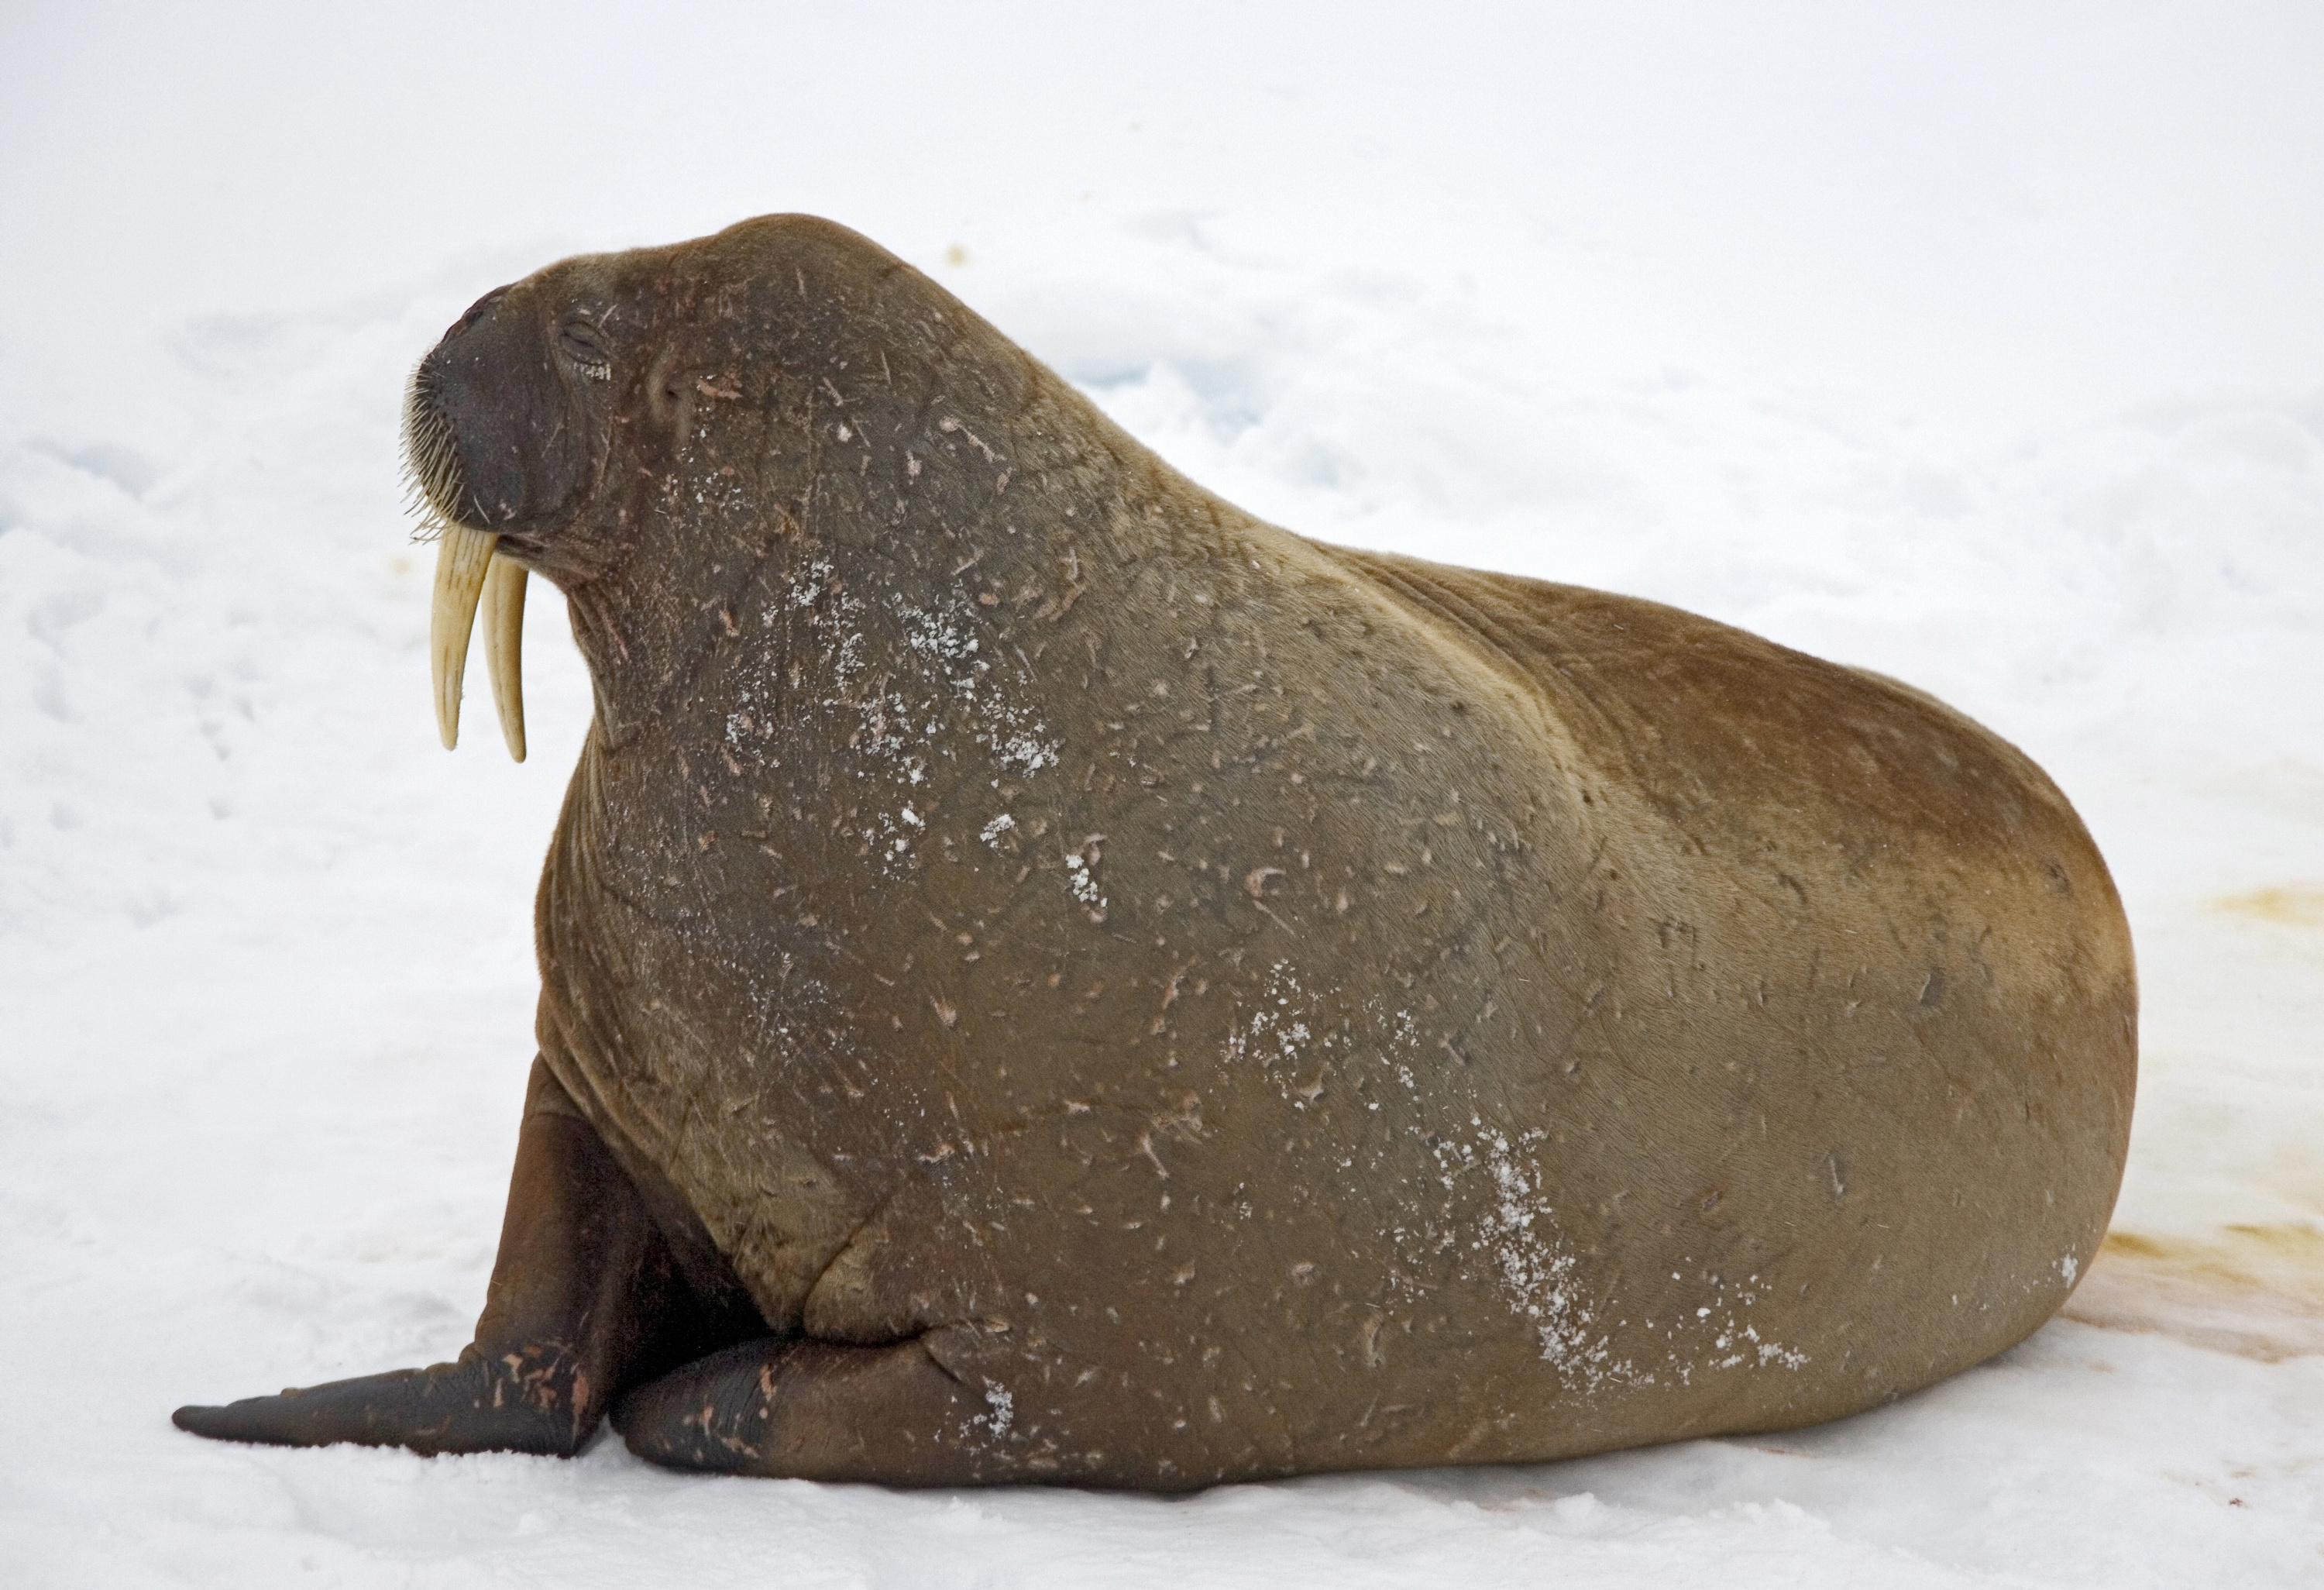 Ученые изучат, что скрывается в жире моржа. Так они поймут, чем кормится животное и насколько загрязнена Арктика